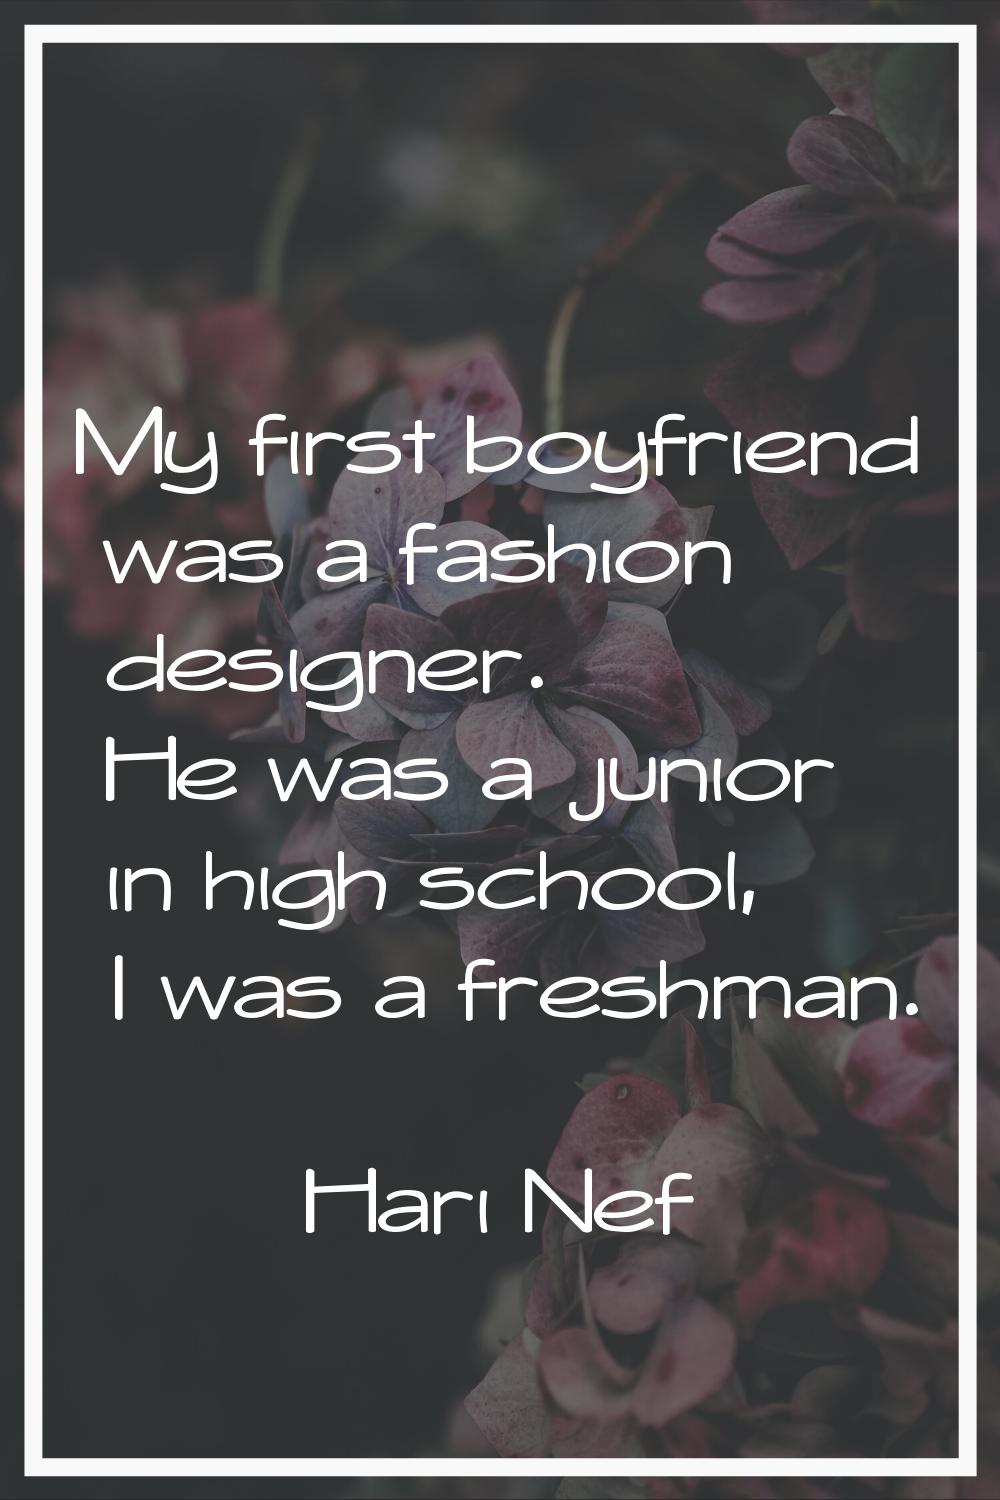 My first boyfriend was a fashion designer. He was a junior in high school, I was a freshman.